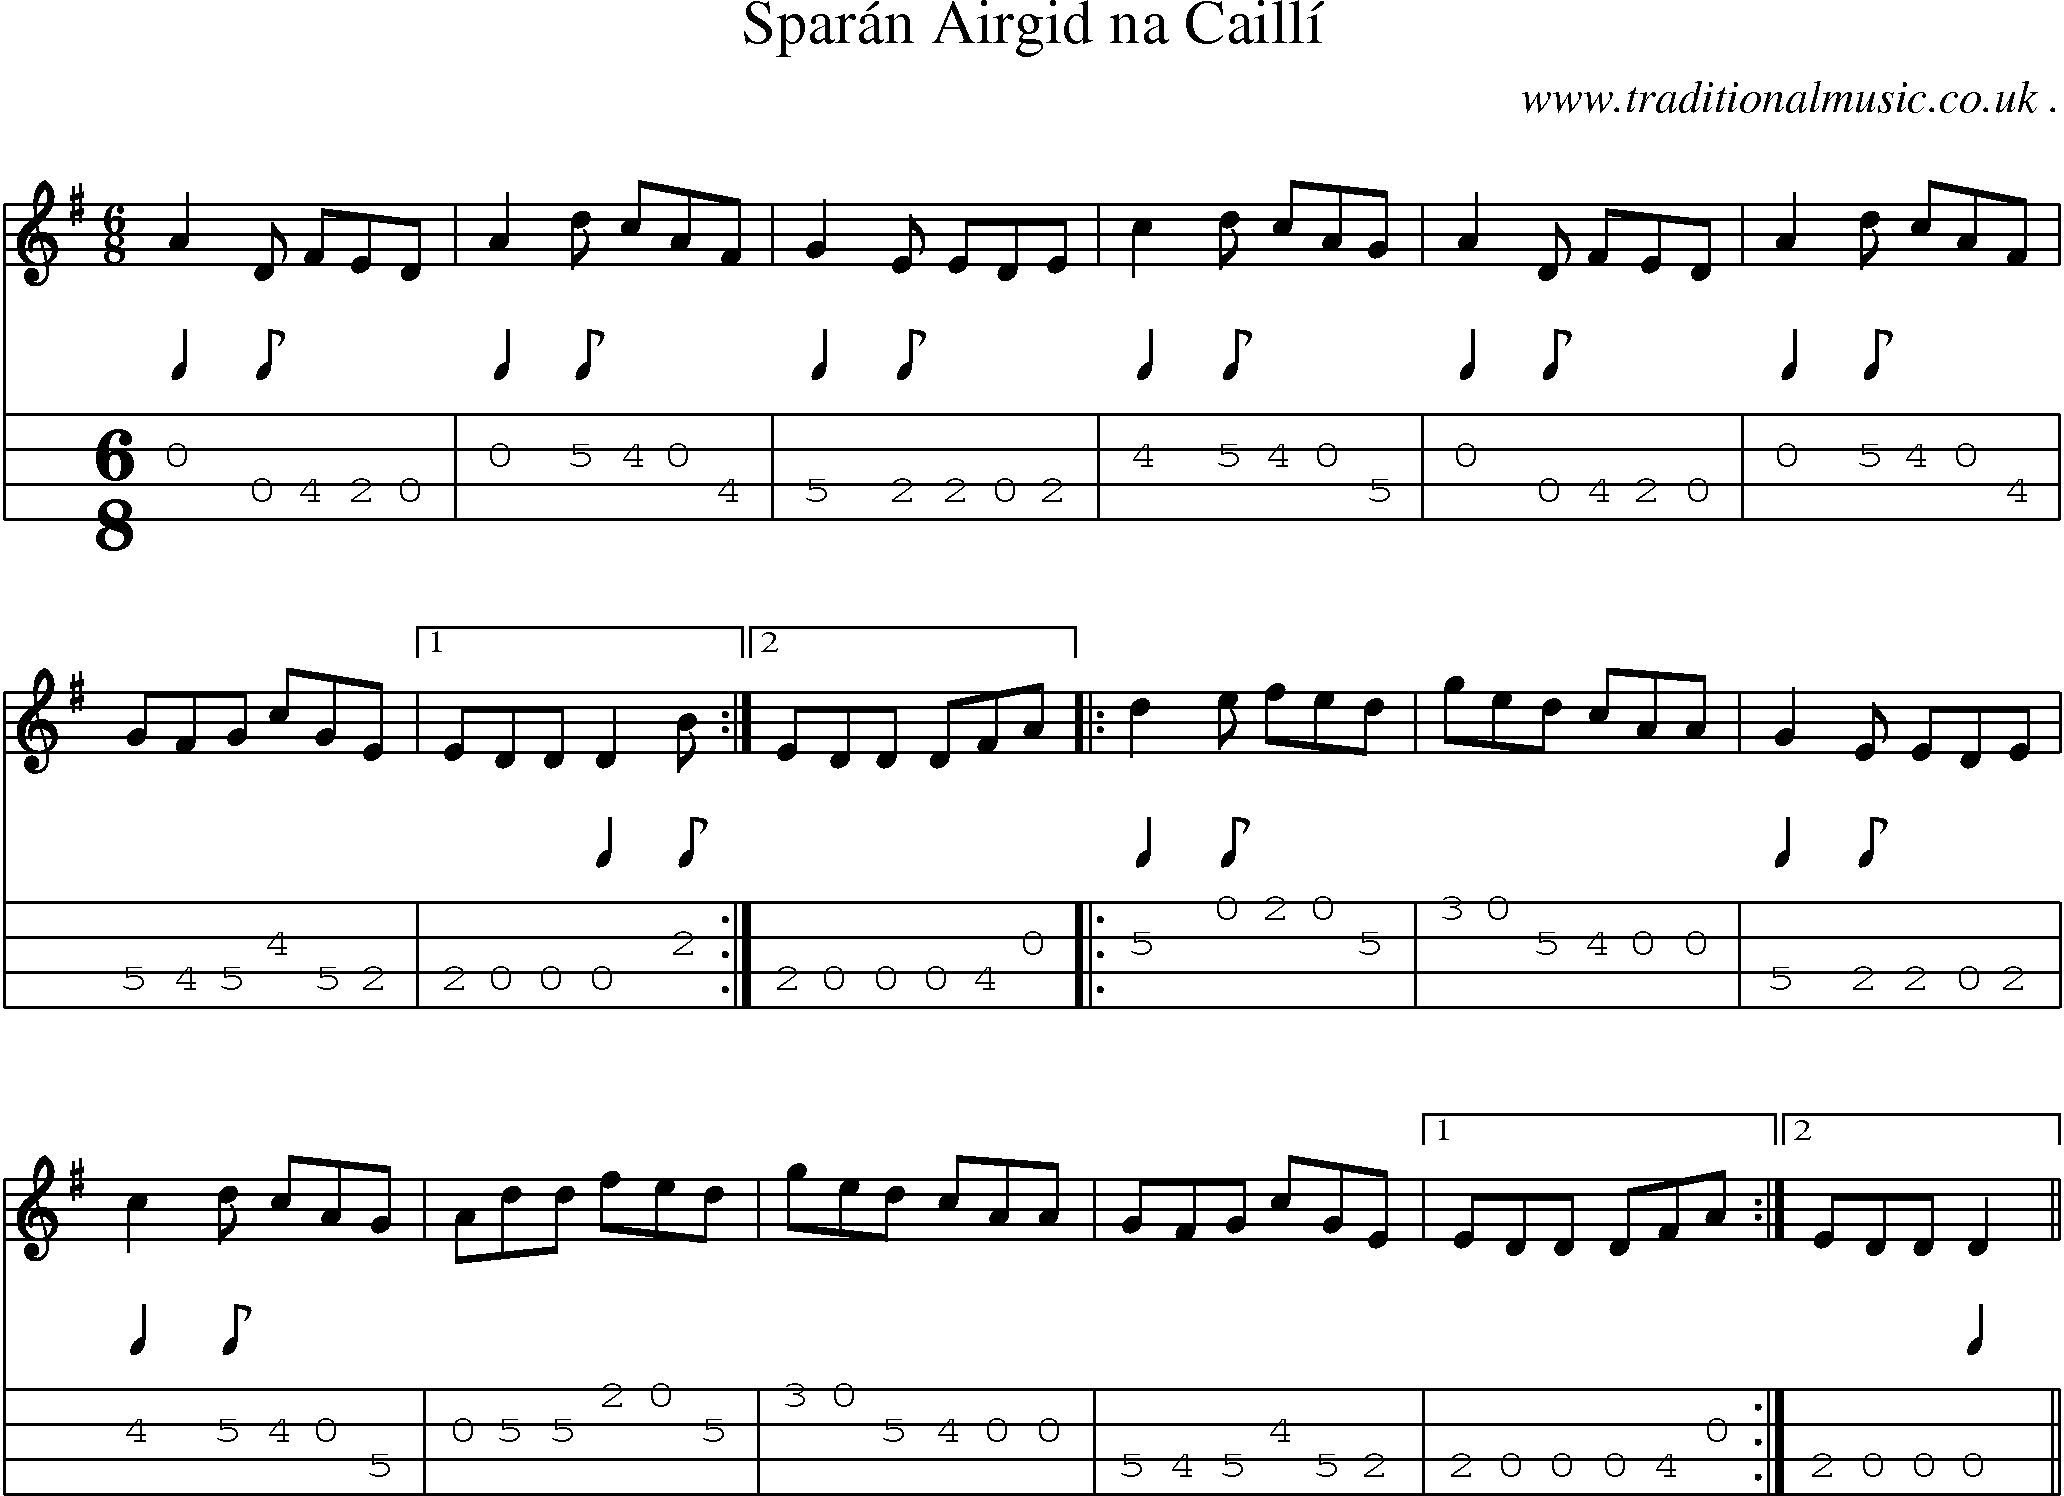 Sheet-Music and Mandolin Tabs for Sparan Airgid Na Cailli